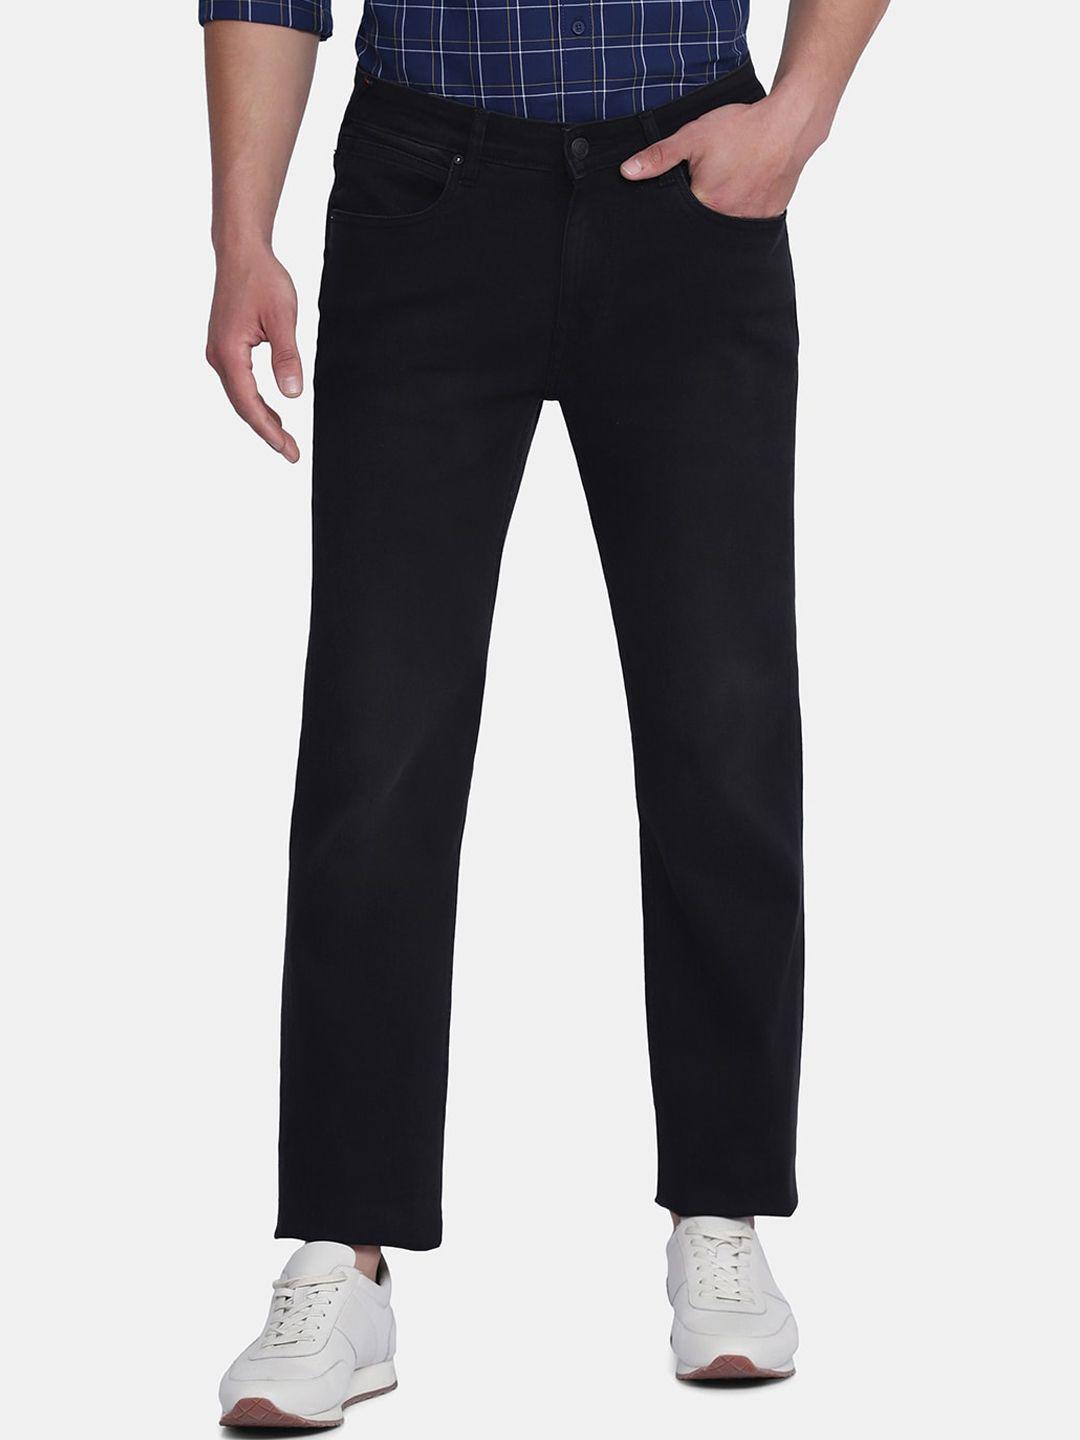 blackberrys-men-black-duke-straight-fit-low-rise-jeans